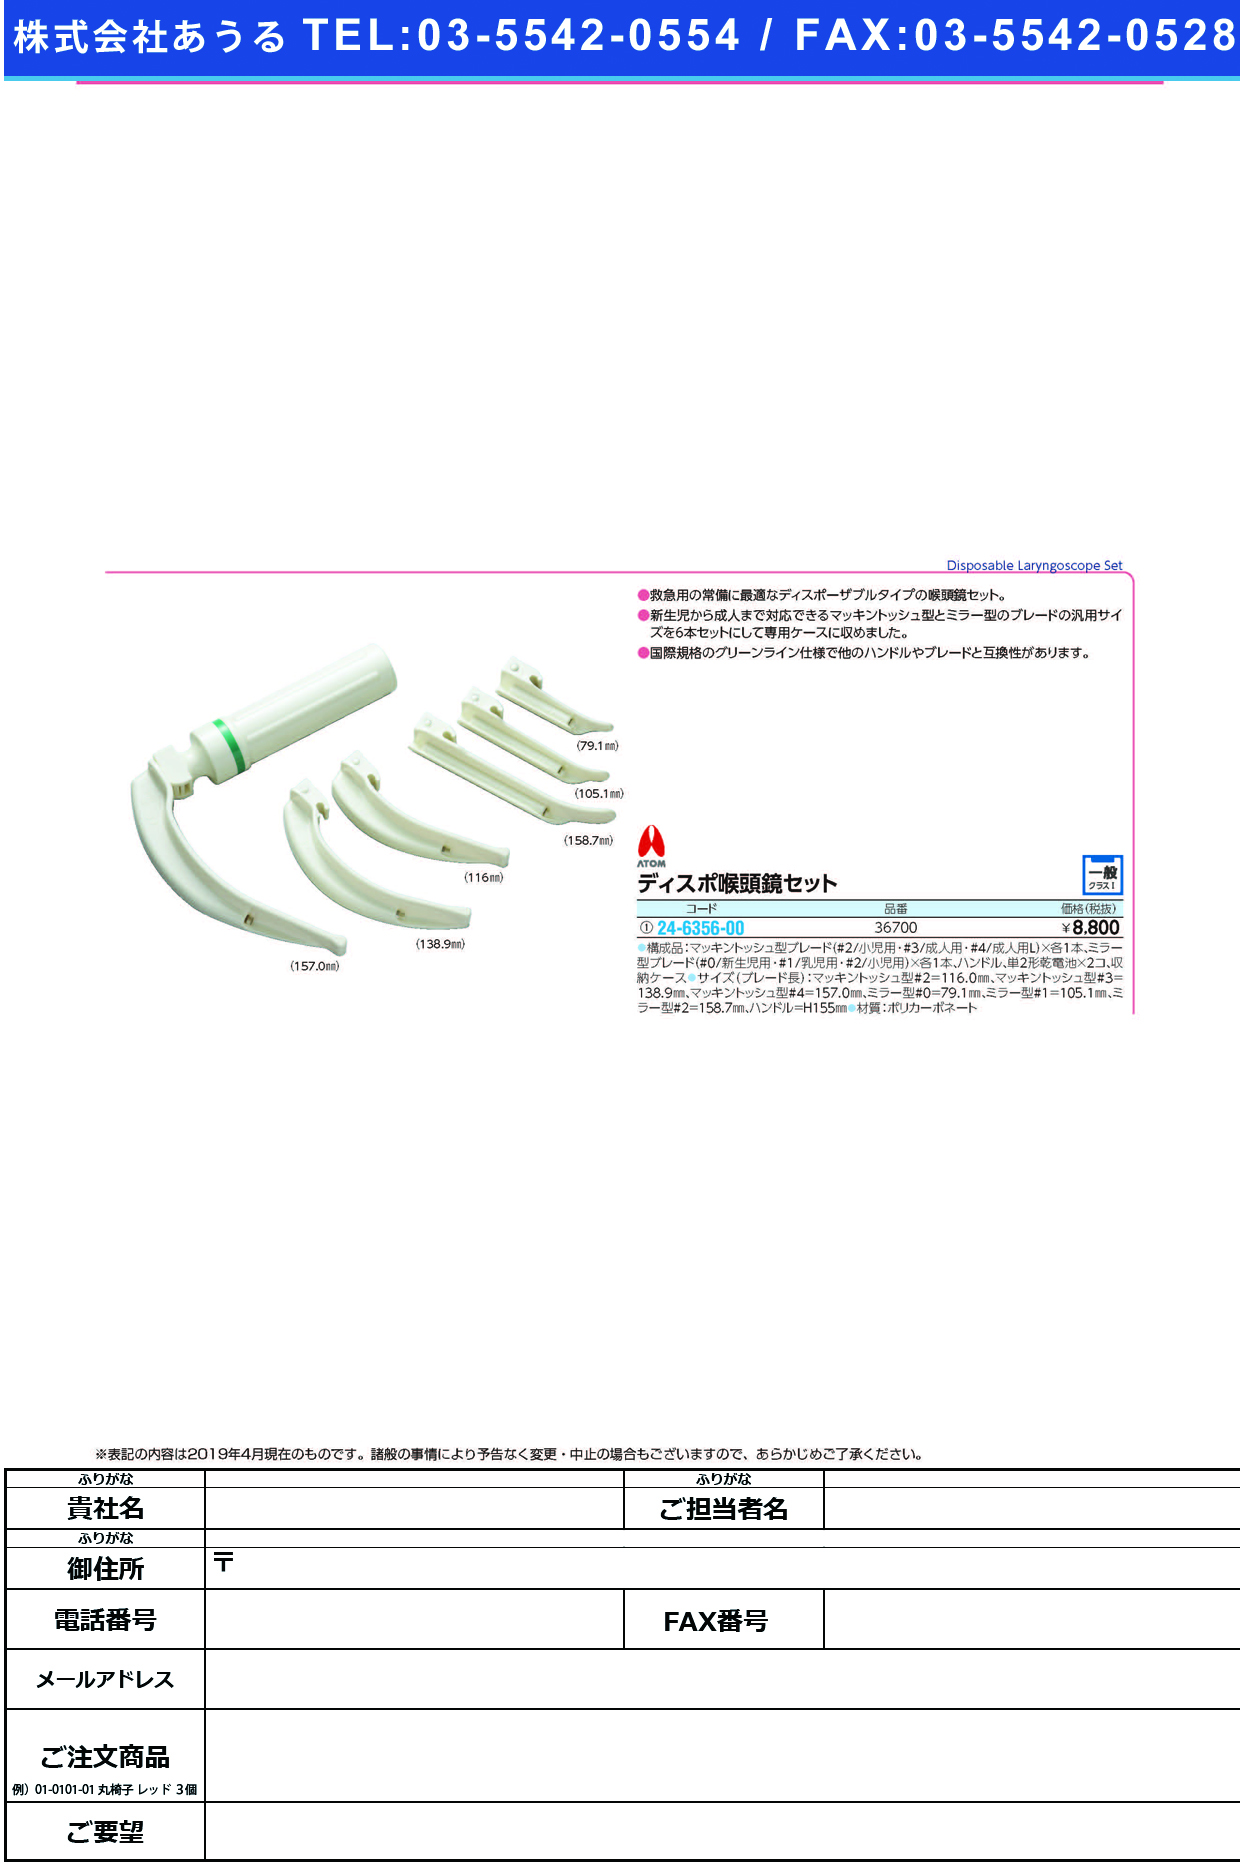 ディスポ喉頭鏡セット 36700 ﾃﾞｨｽﾎﾟｺｳﾄｳｷｮｳｾｯﾄ(アトムメディカル)